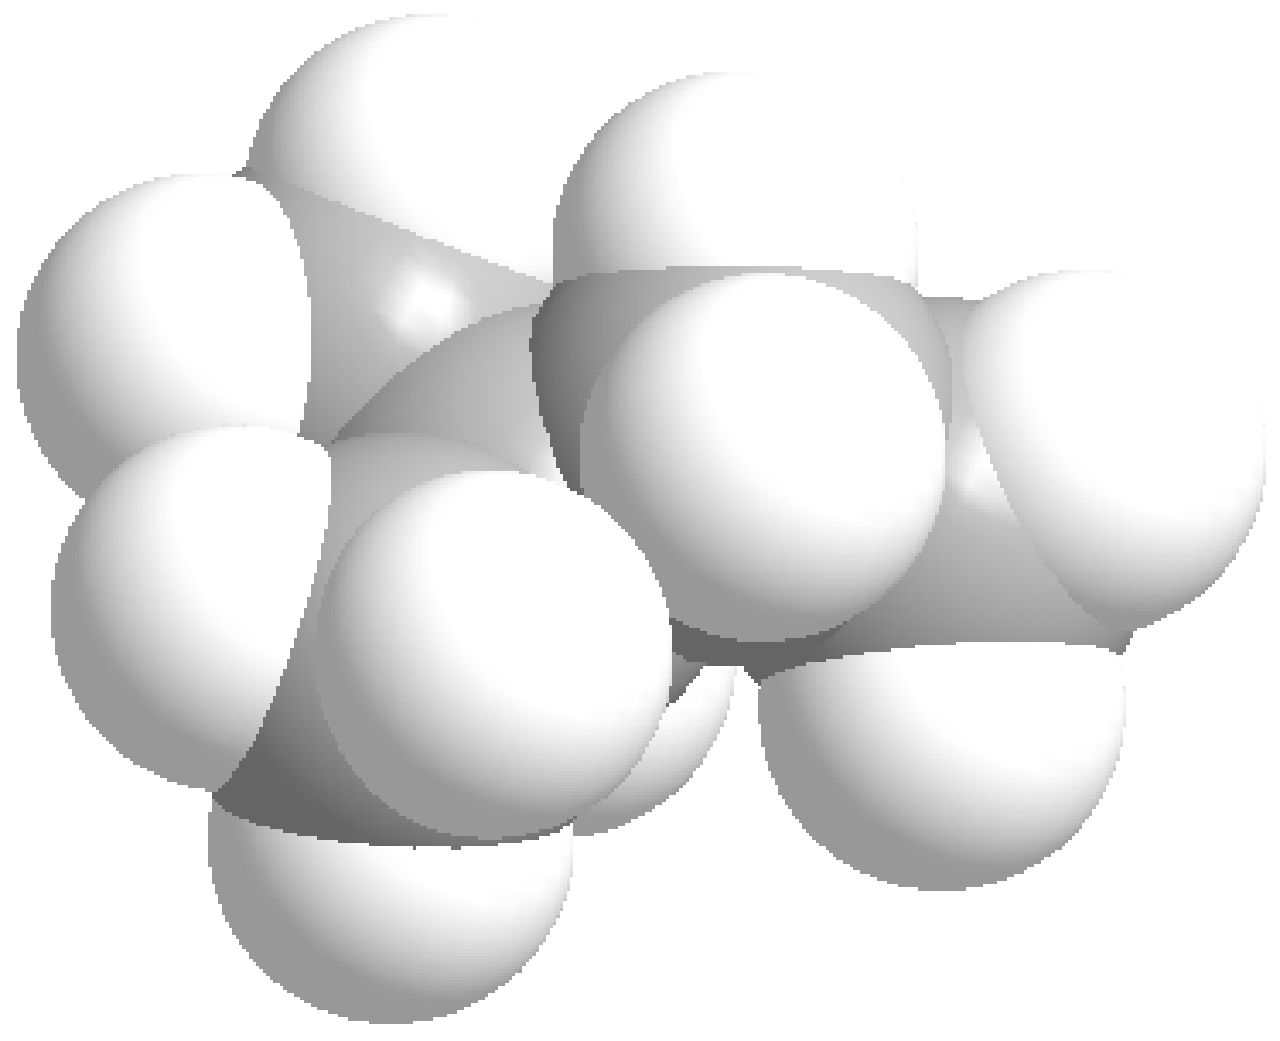 2) Menores fuerzas de London en las moléculas ramificadas, debido a su forma cuasi esférica, que disminuye la superficie de